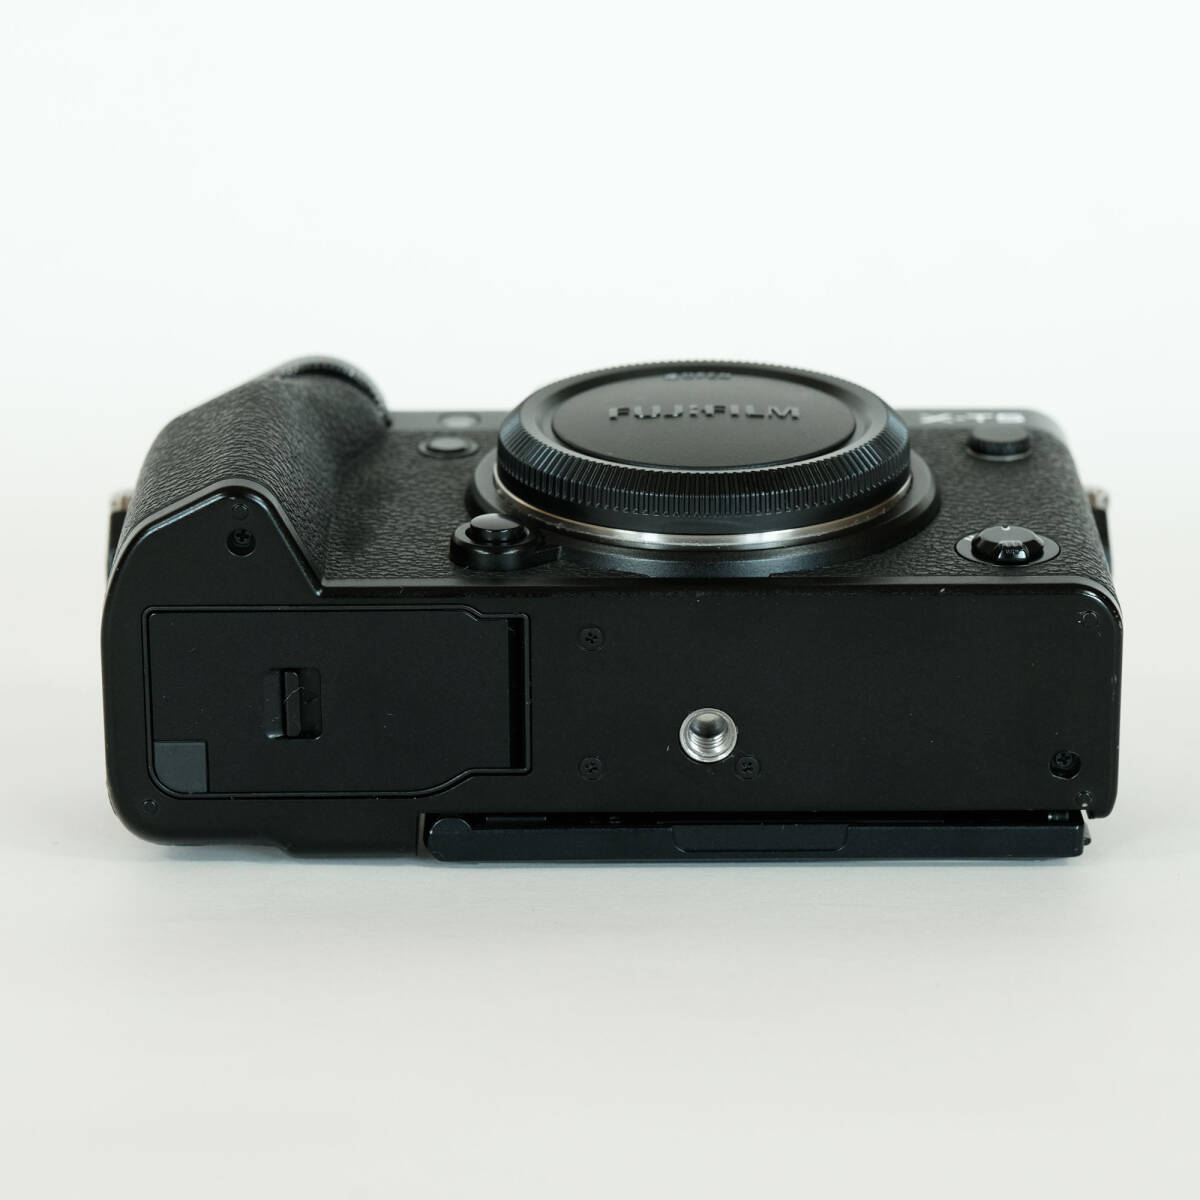 [ shutter число 6,673 раз ] FUJIFILM X-T5 корпус черный / Fuji Film X крепление / беззеркальный однообъективный / APS-C